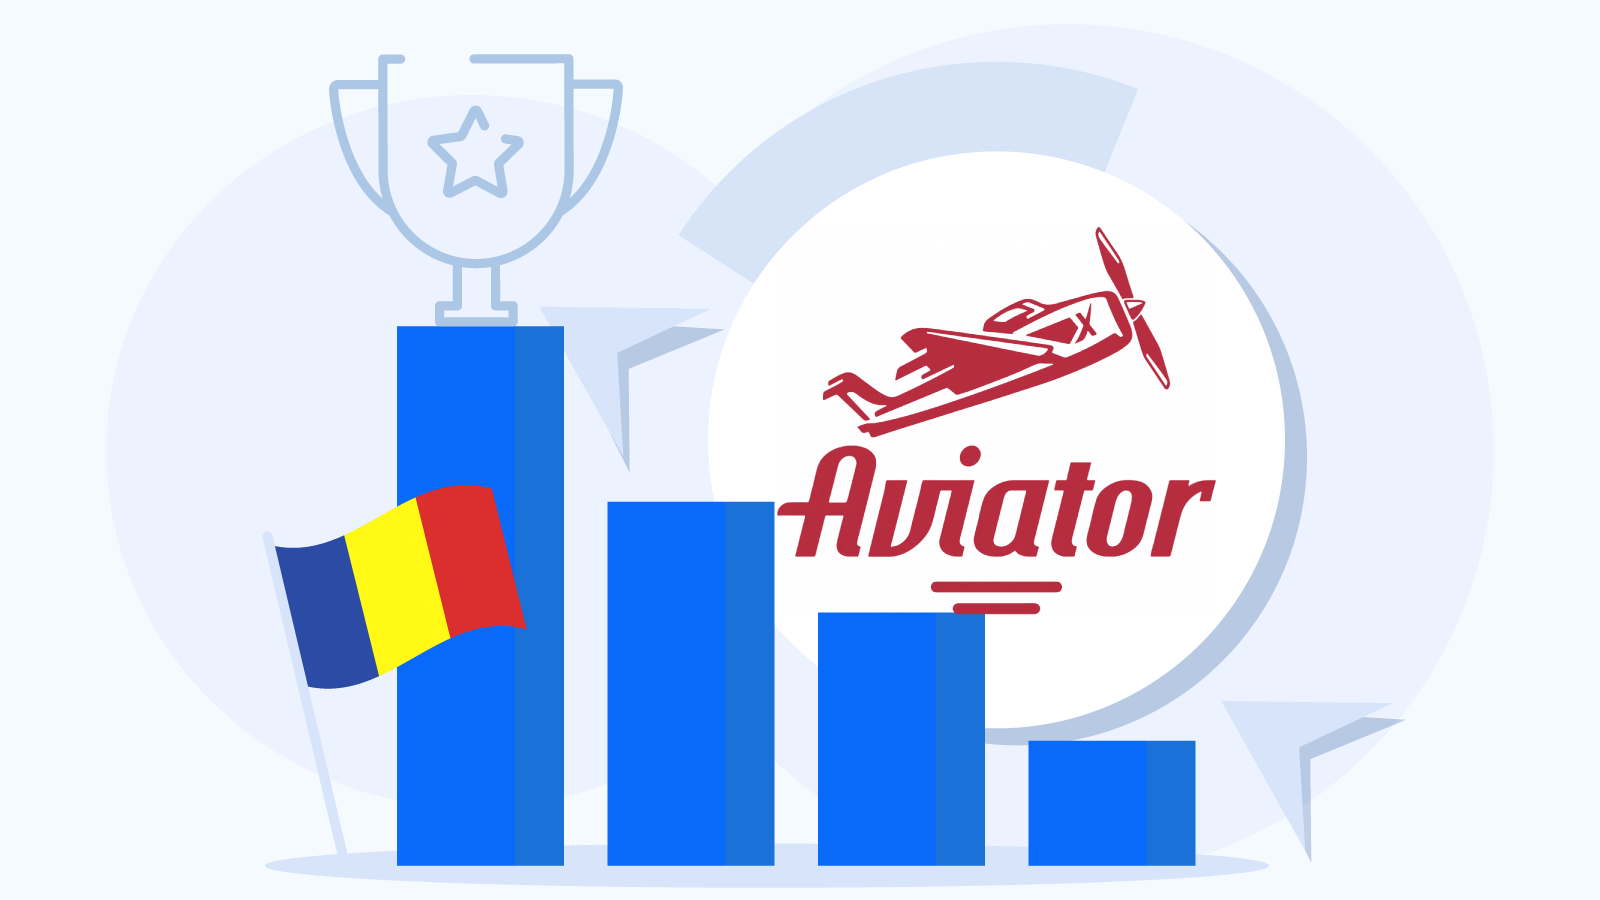 De ce a devenit jocul Aviator atât de popular în România?